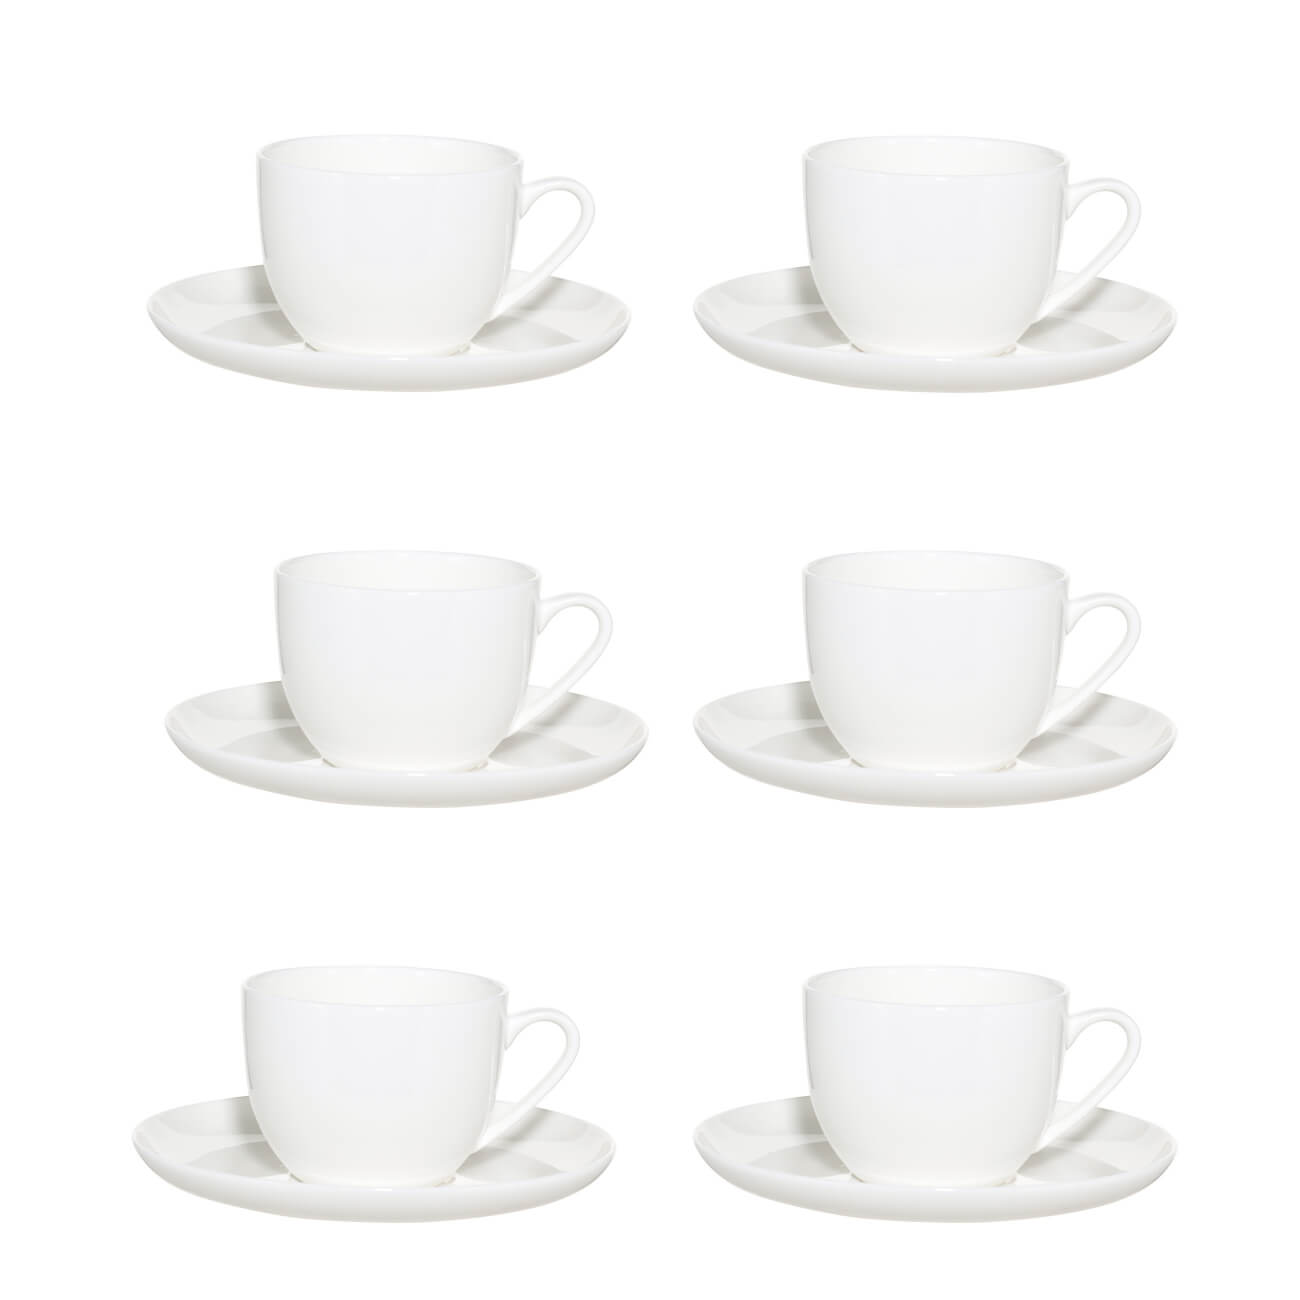 Пара чайная, 6 перс, 12 пр, 250 мл, фарфор F, белая, Ideal white пара чайная чашка блюдце 350 мл tudor tu9999 4